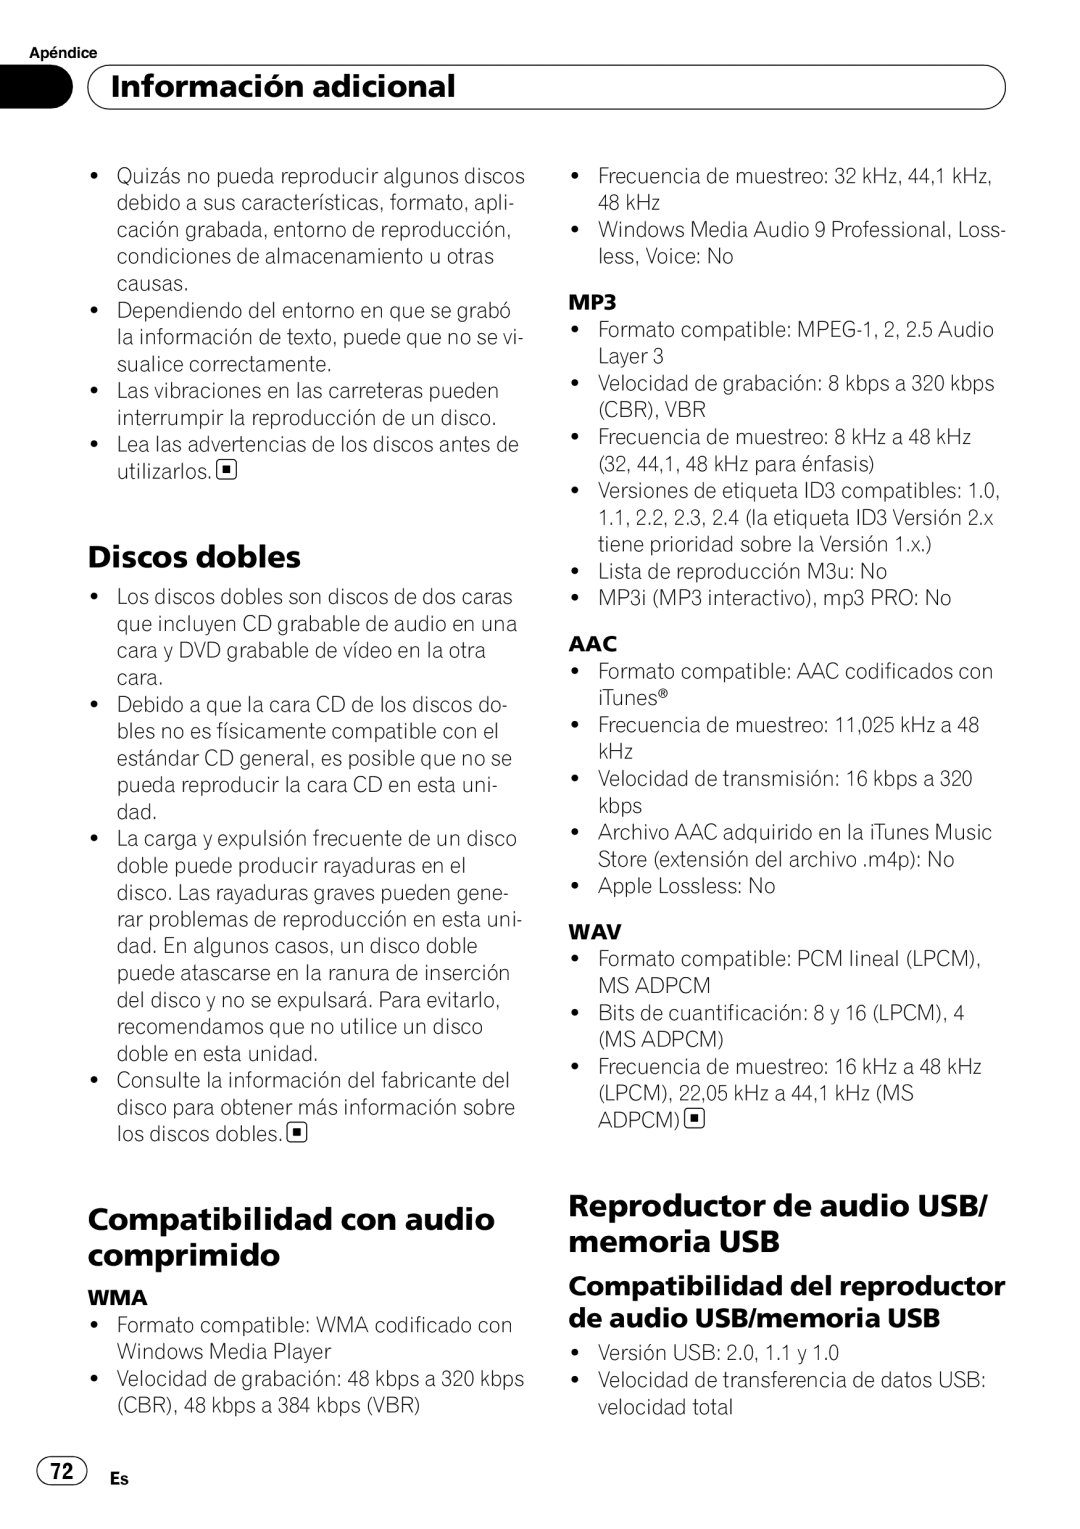 Pioneer DEH-50UB operation manual Discos dobles, Compatibilidad con audio comprimido, Reproductor de audio USB/ memoria USB 